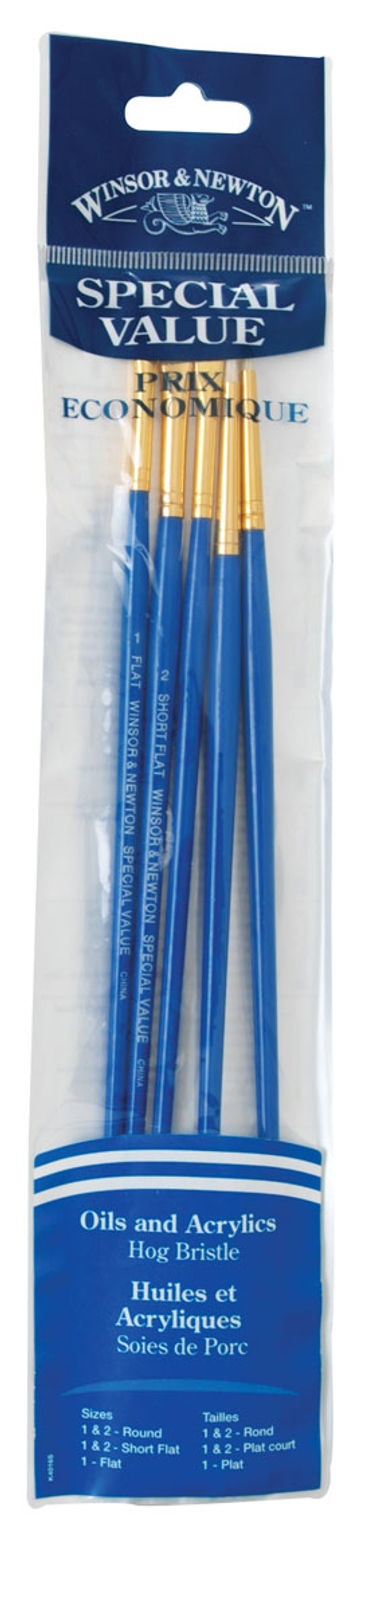 Winsor & Newton Value Brush Packs Cobalt Blue